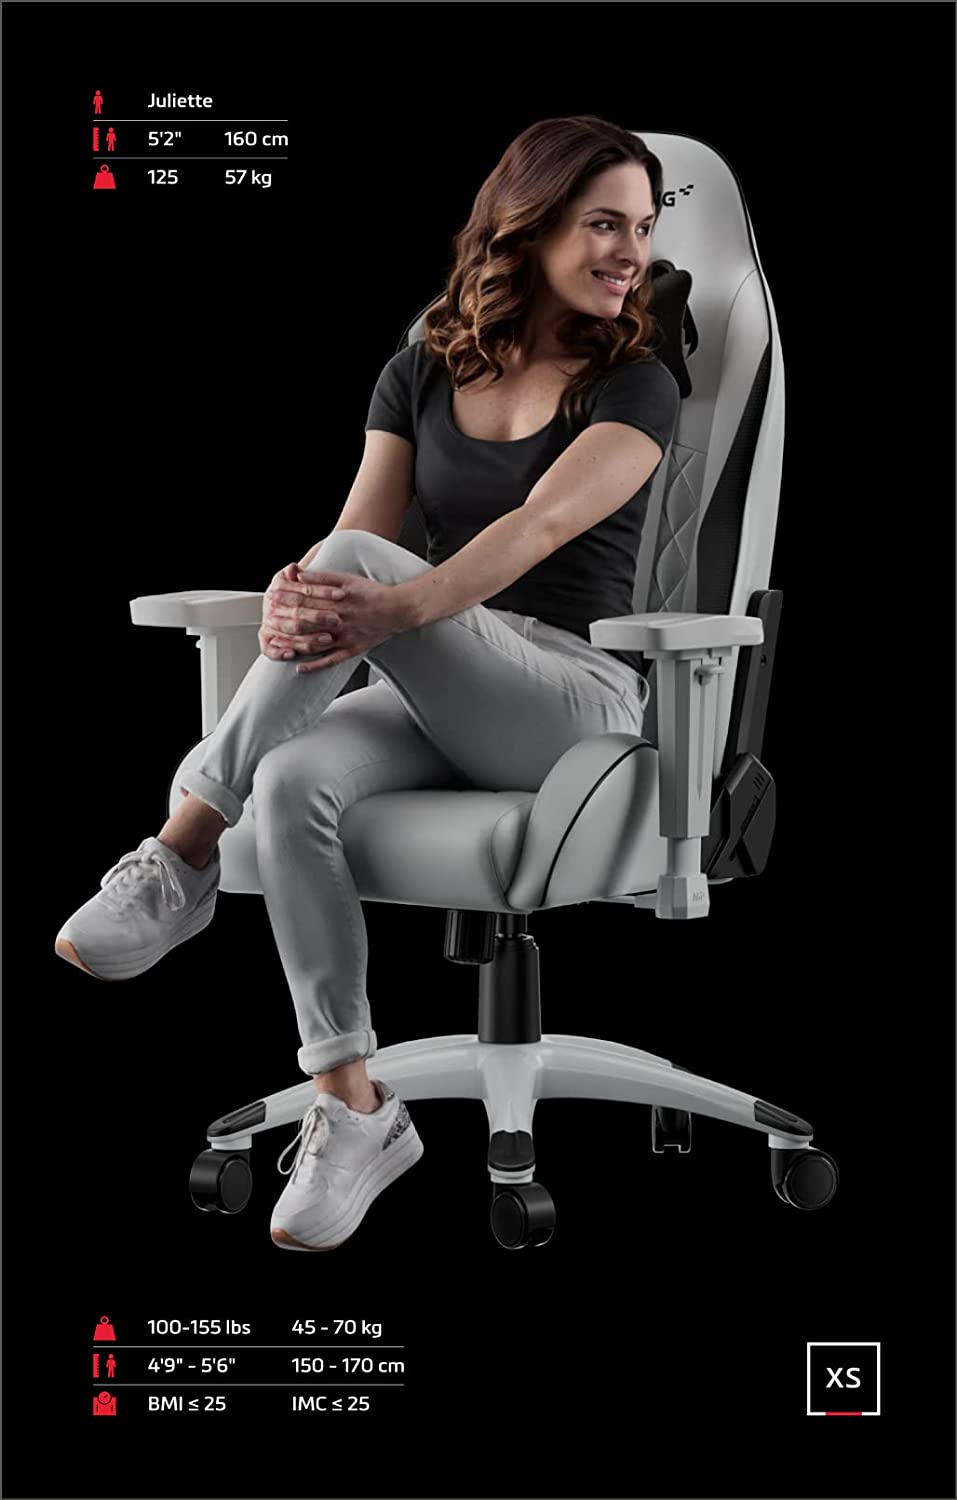 صندلی گیمینگ AKRacing Gaming Chair Polyurethane White Small - ارسال ۱۰ الی ۱۵ روز کاری